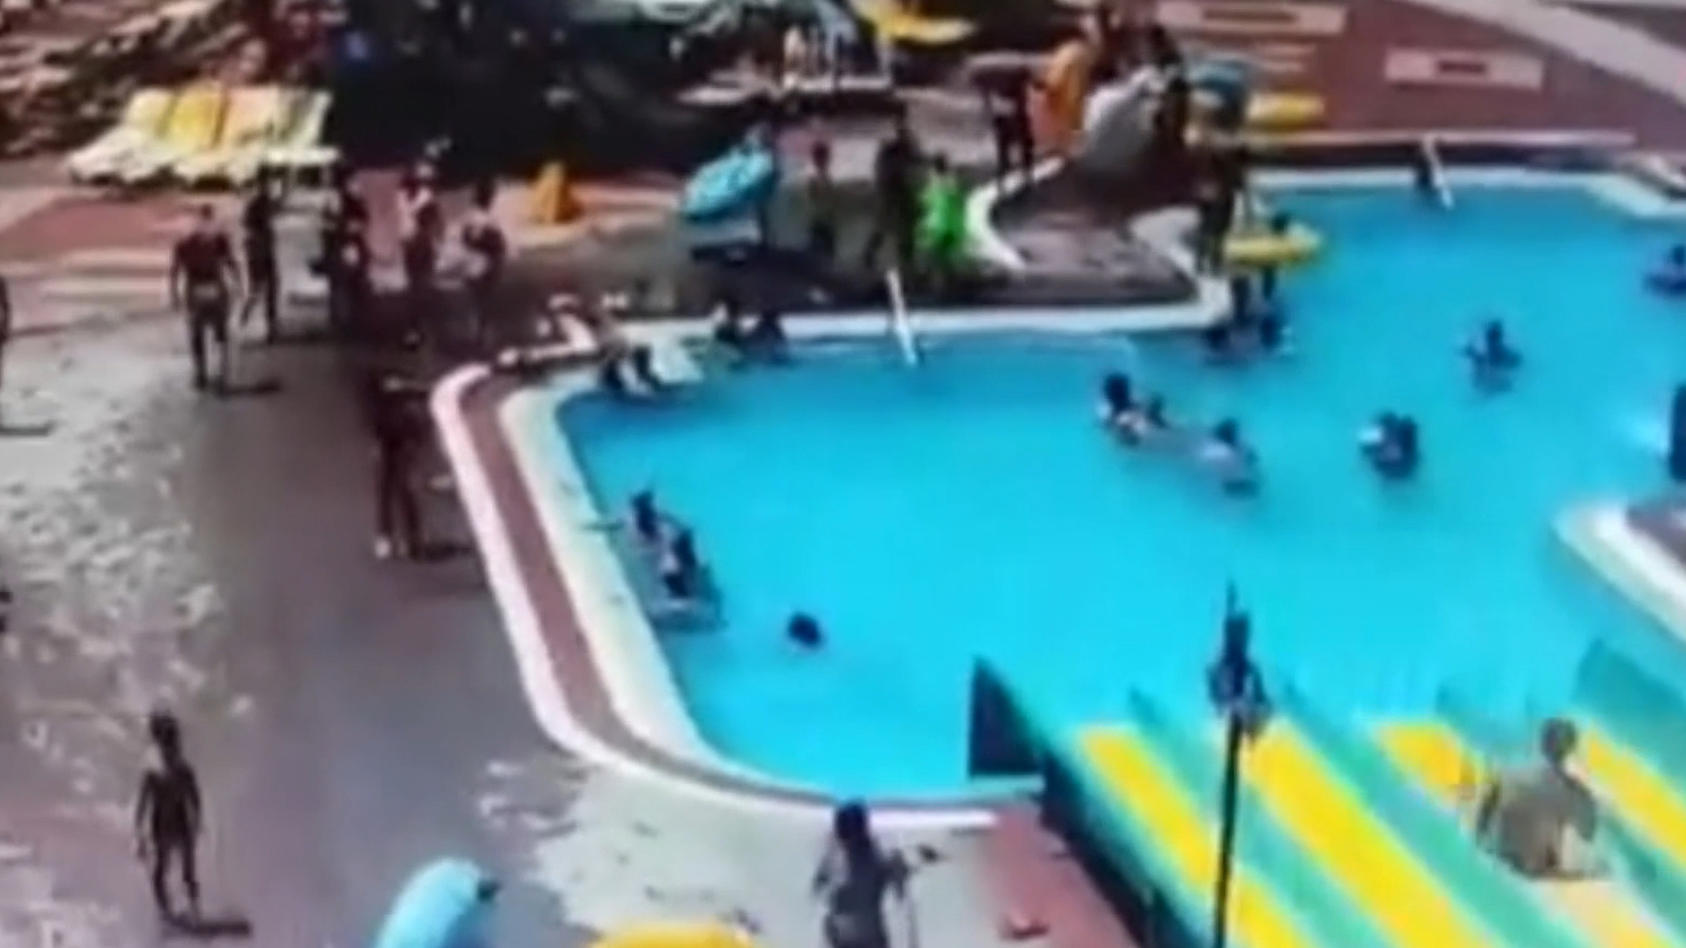 Tödlicher Wasserrutschen-Unfall in türkischem Hotel Tourist schlägt mit Kopf auf Betonboden auf